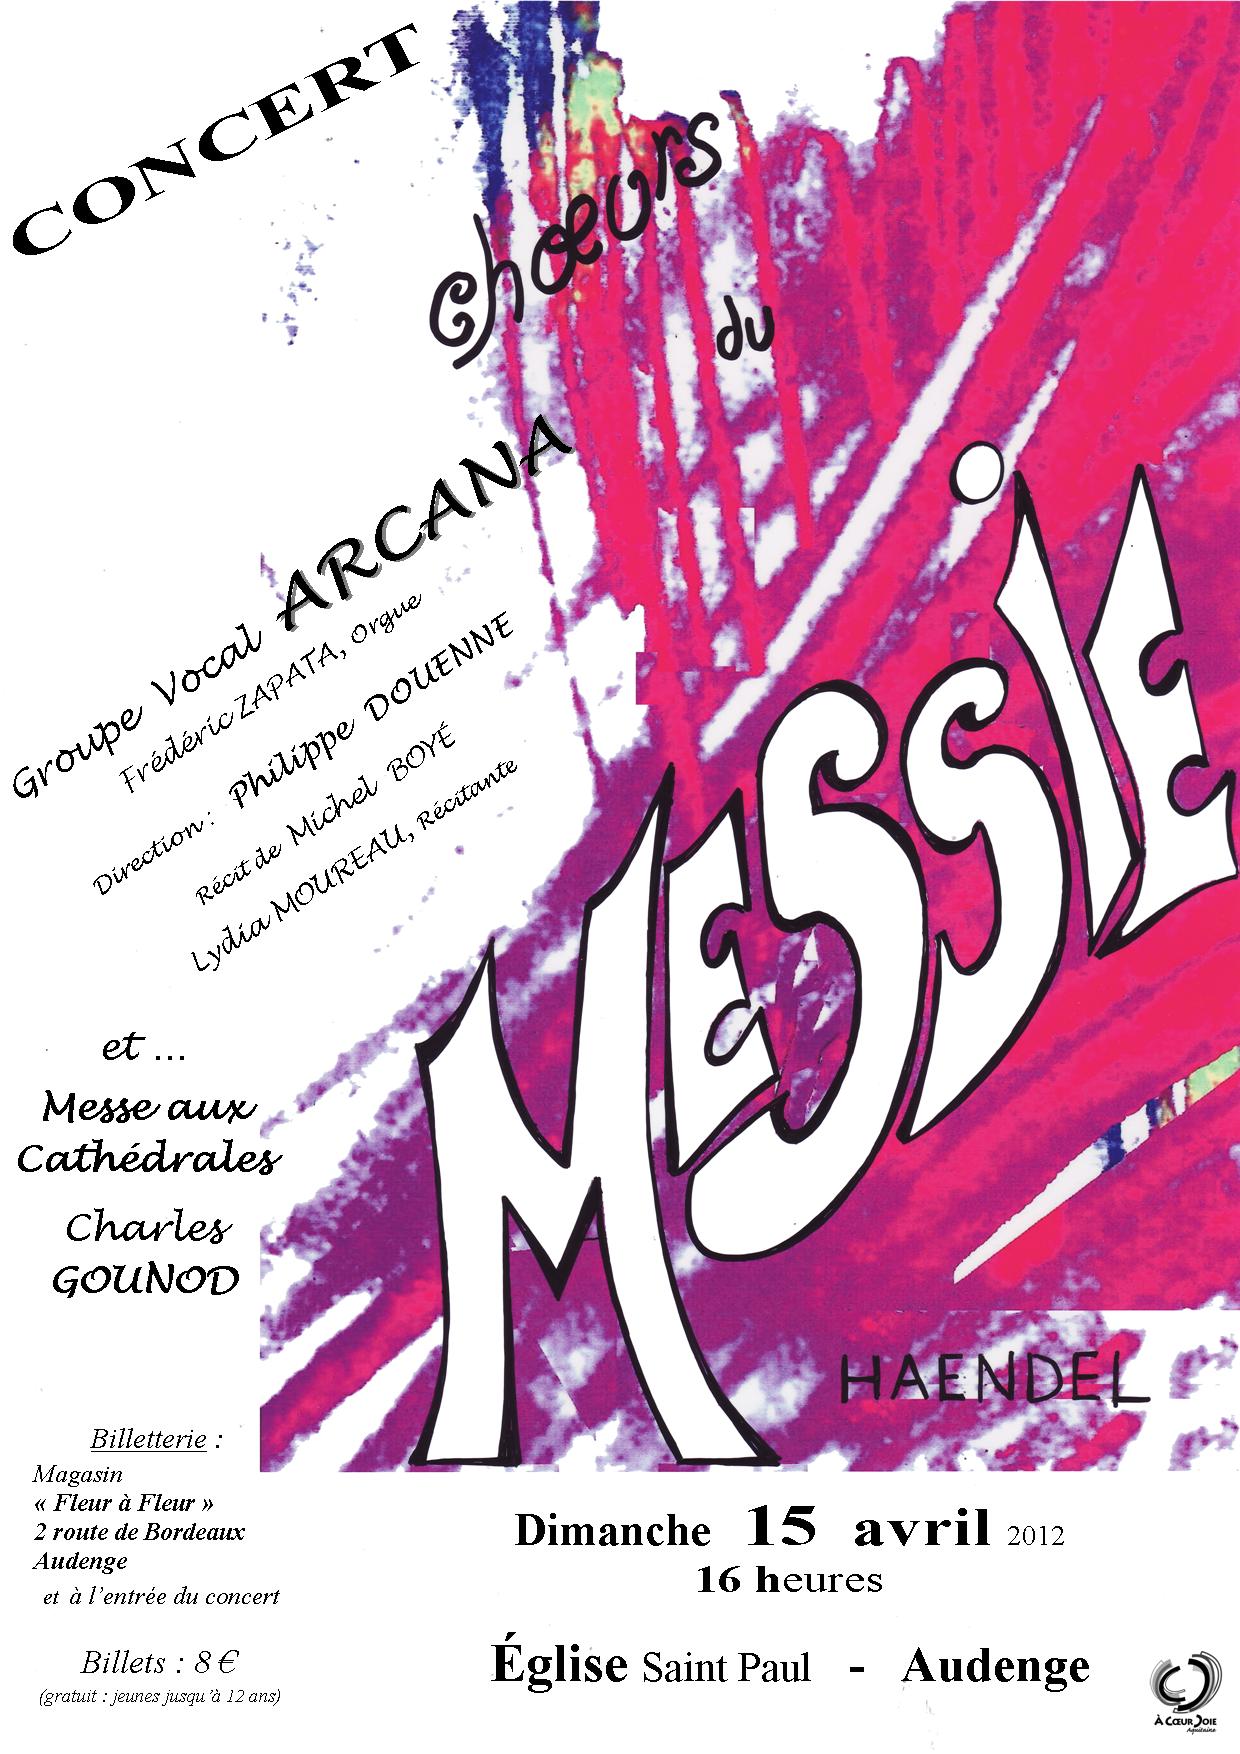 Concert 15 Avril 2012 - Choeurs du Messie de Haëndel et Messe aux Cathédrales de Gounod (Arcana)